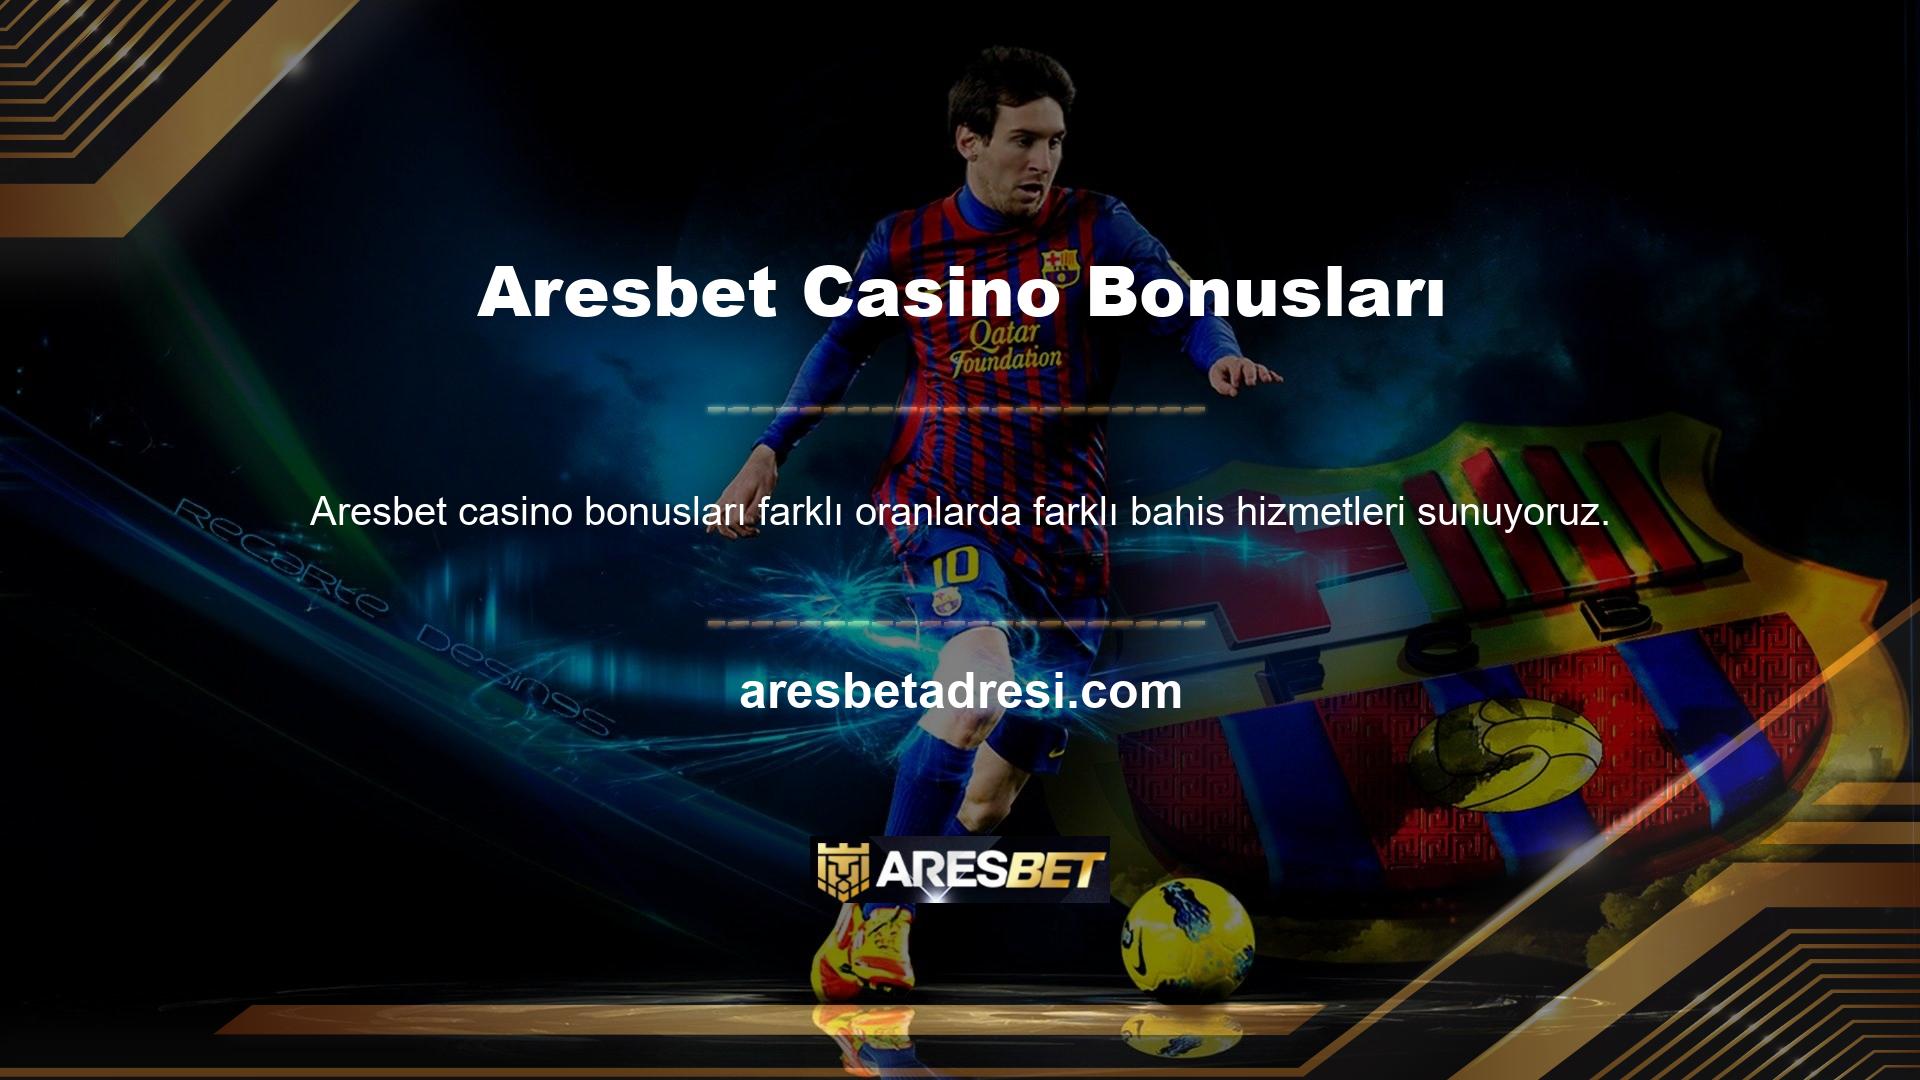 Örneğin Aresbet Casino Games, oyunlarının çeşitli versiyonlarını sunmaktadır